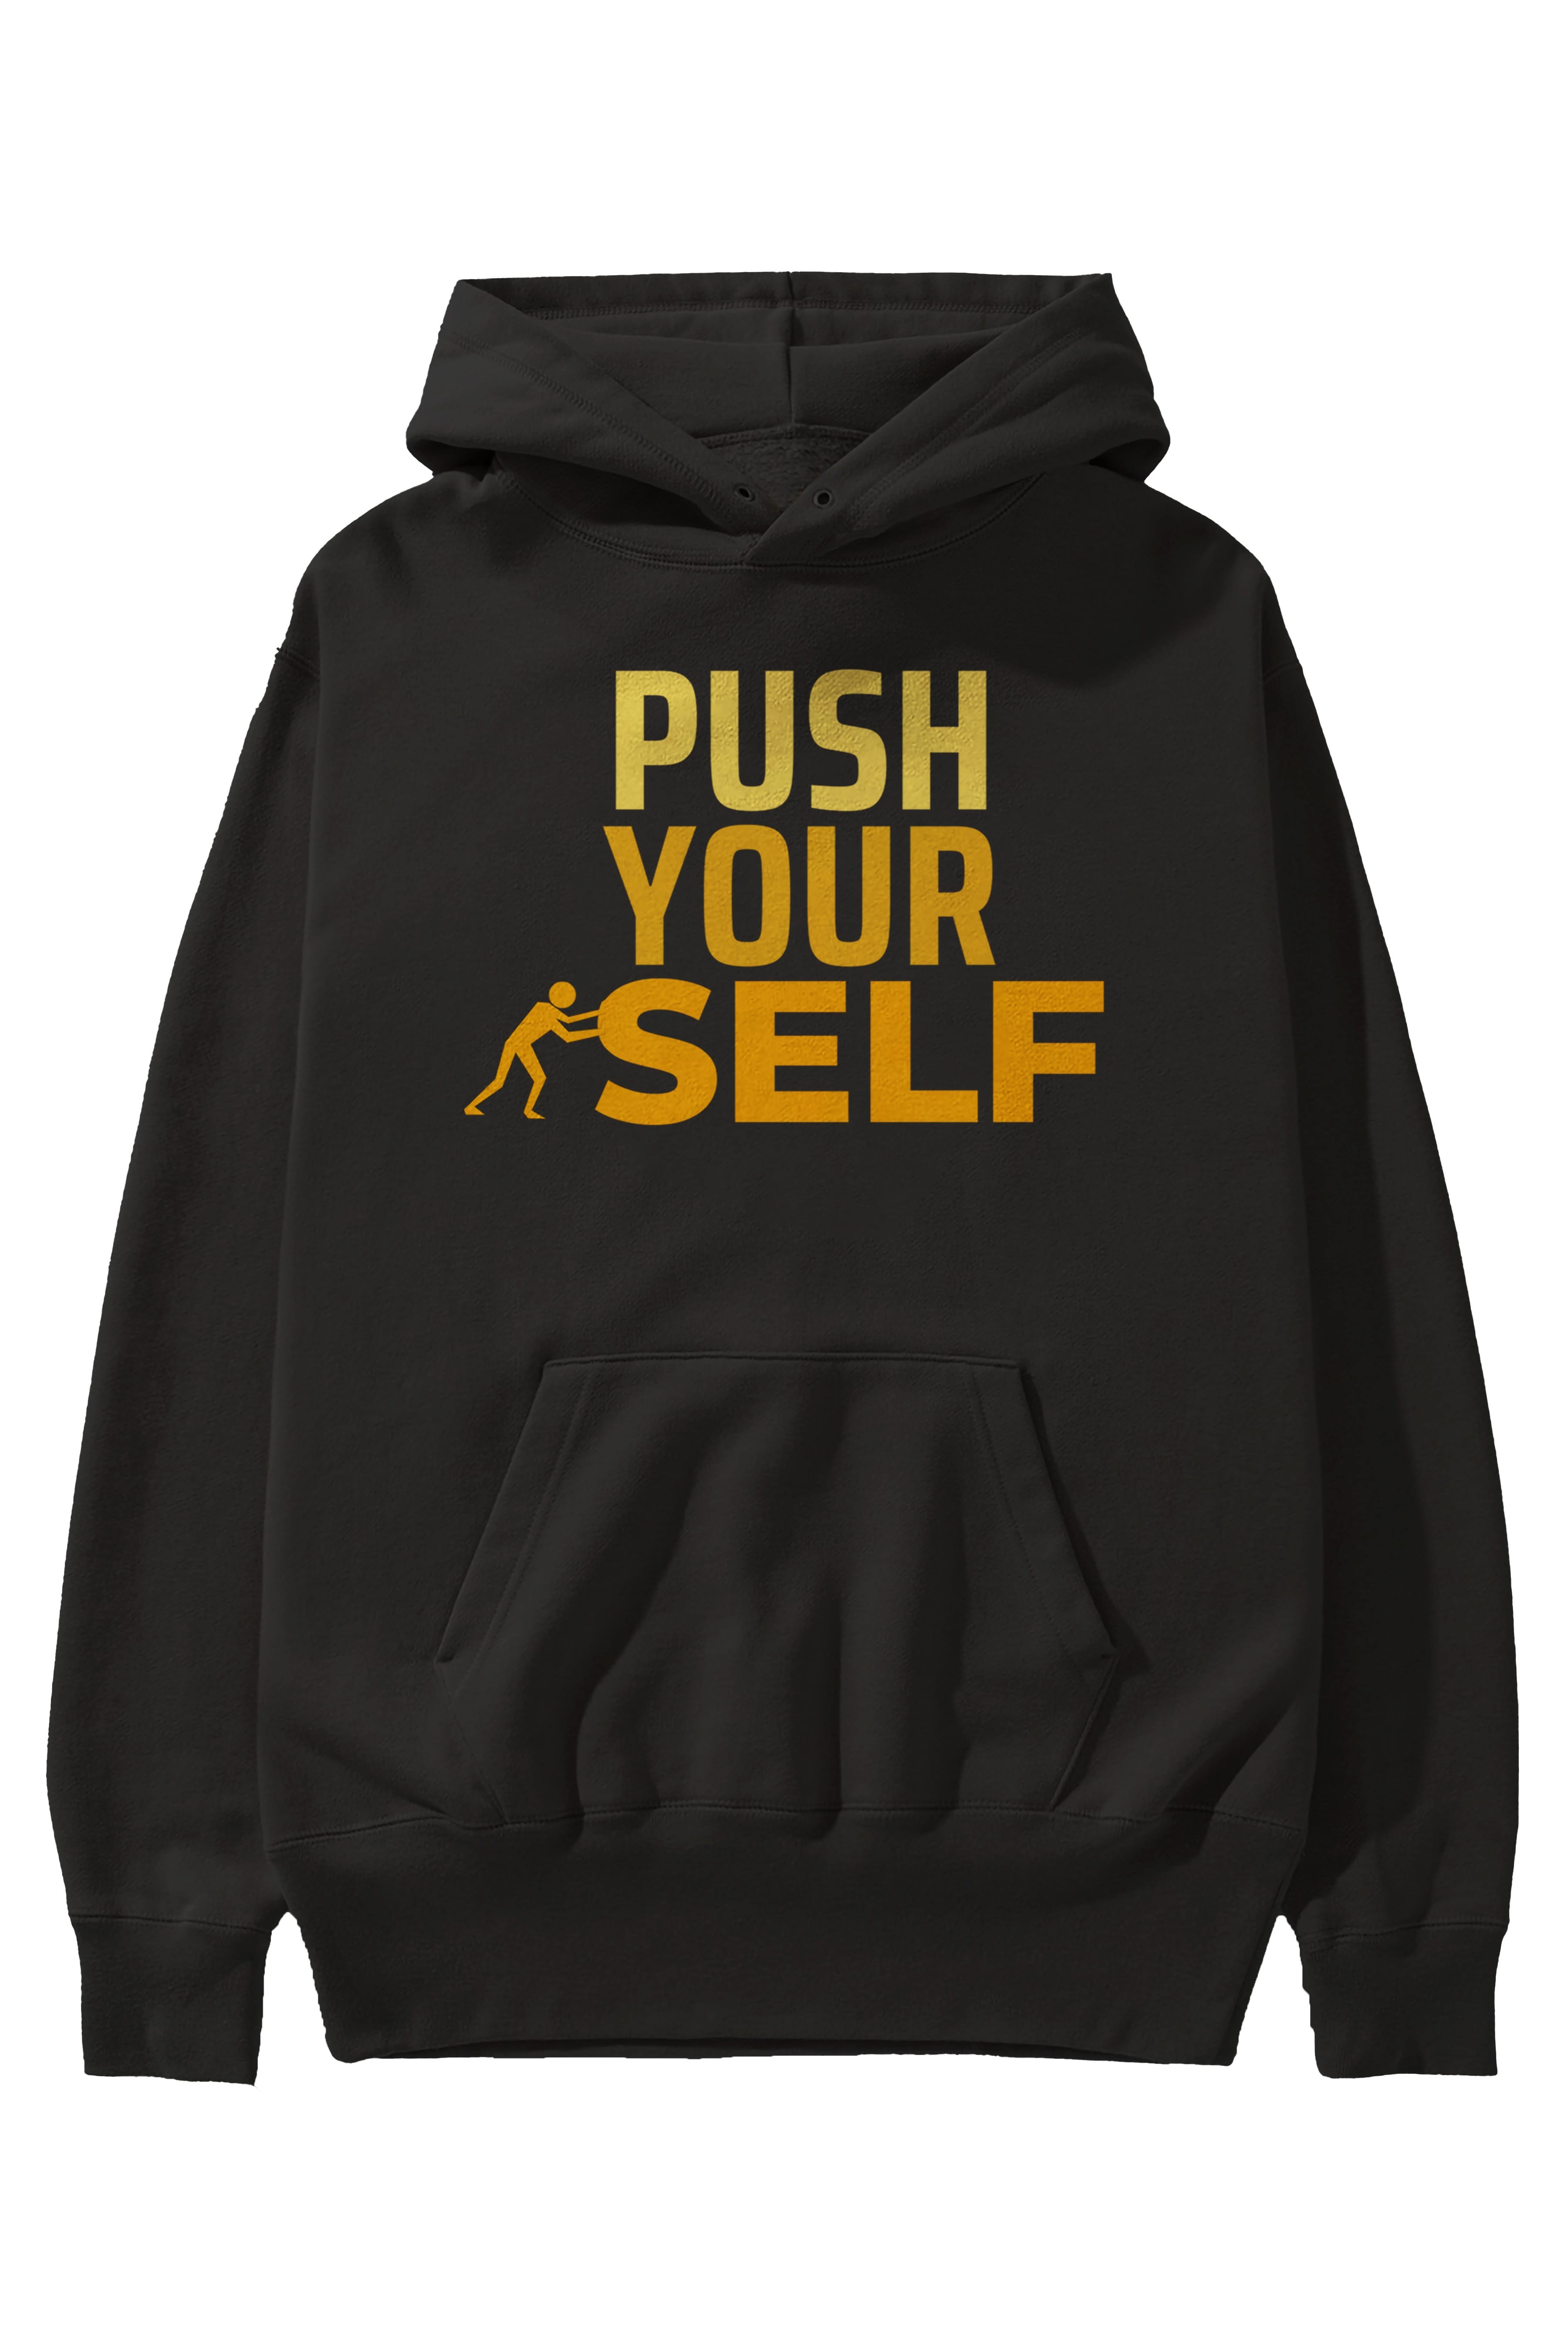 Push Yourself Yazılı Ön Baskılı Oversize Hoodie Kapüşonlu Sweatshirt Erkek Kadın Unisex